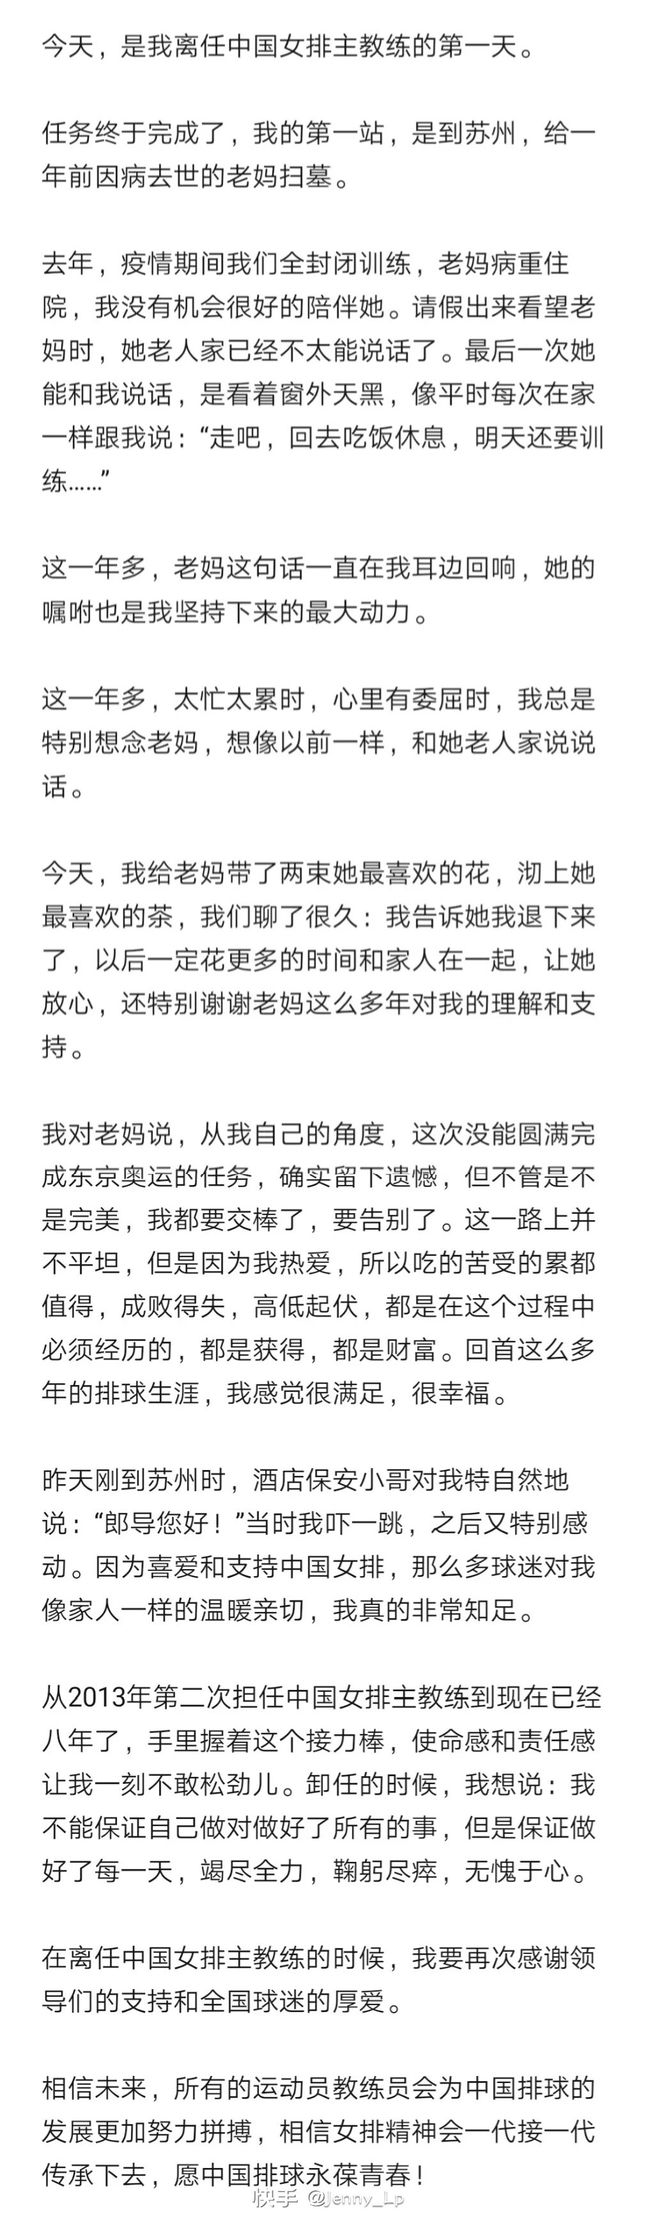 郎平宣布卸任中国女排主教练 相信女排精神会代代传承